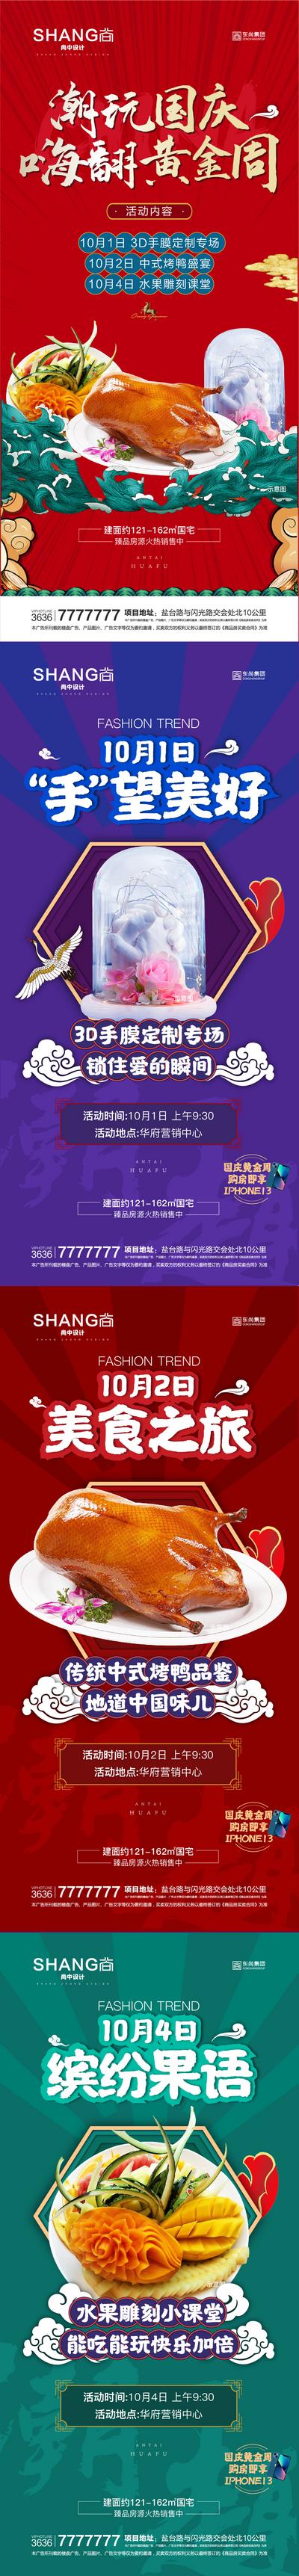 南门网 海报 地产 十一 国庆 黄金周 活动 烤鸭 手膜 水果雕刻 潮玩